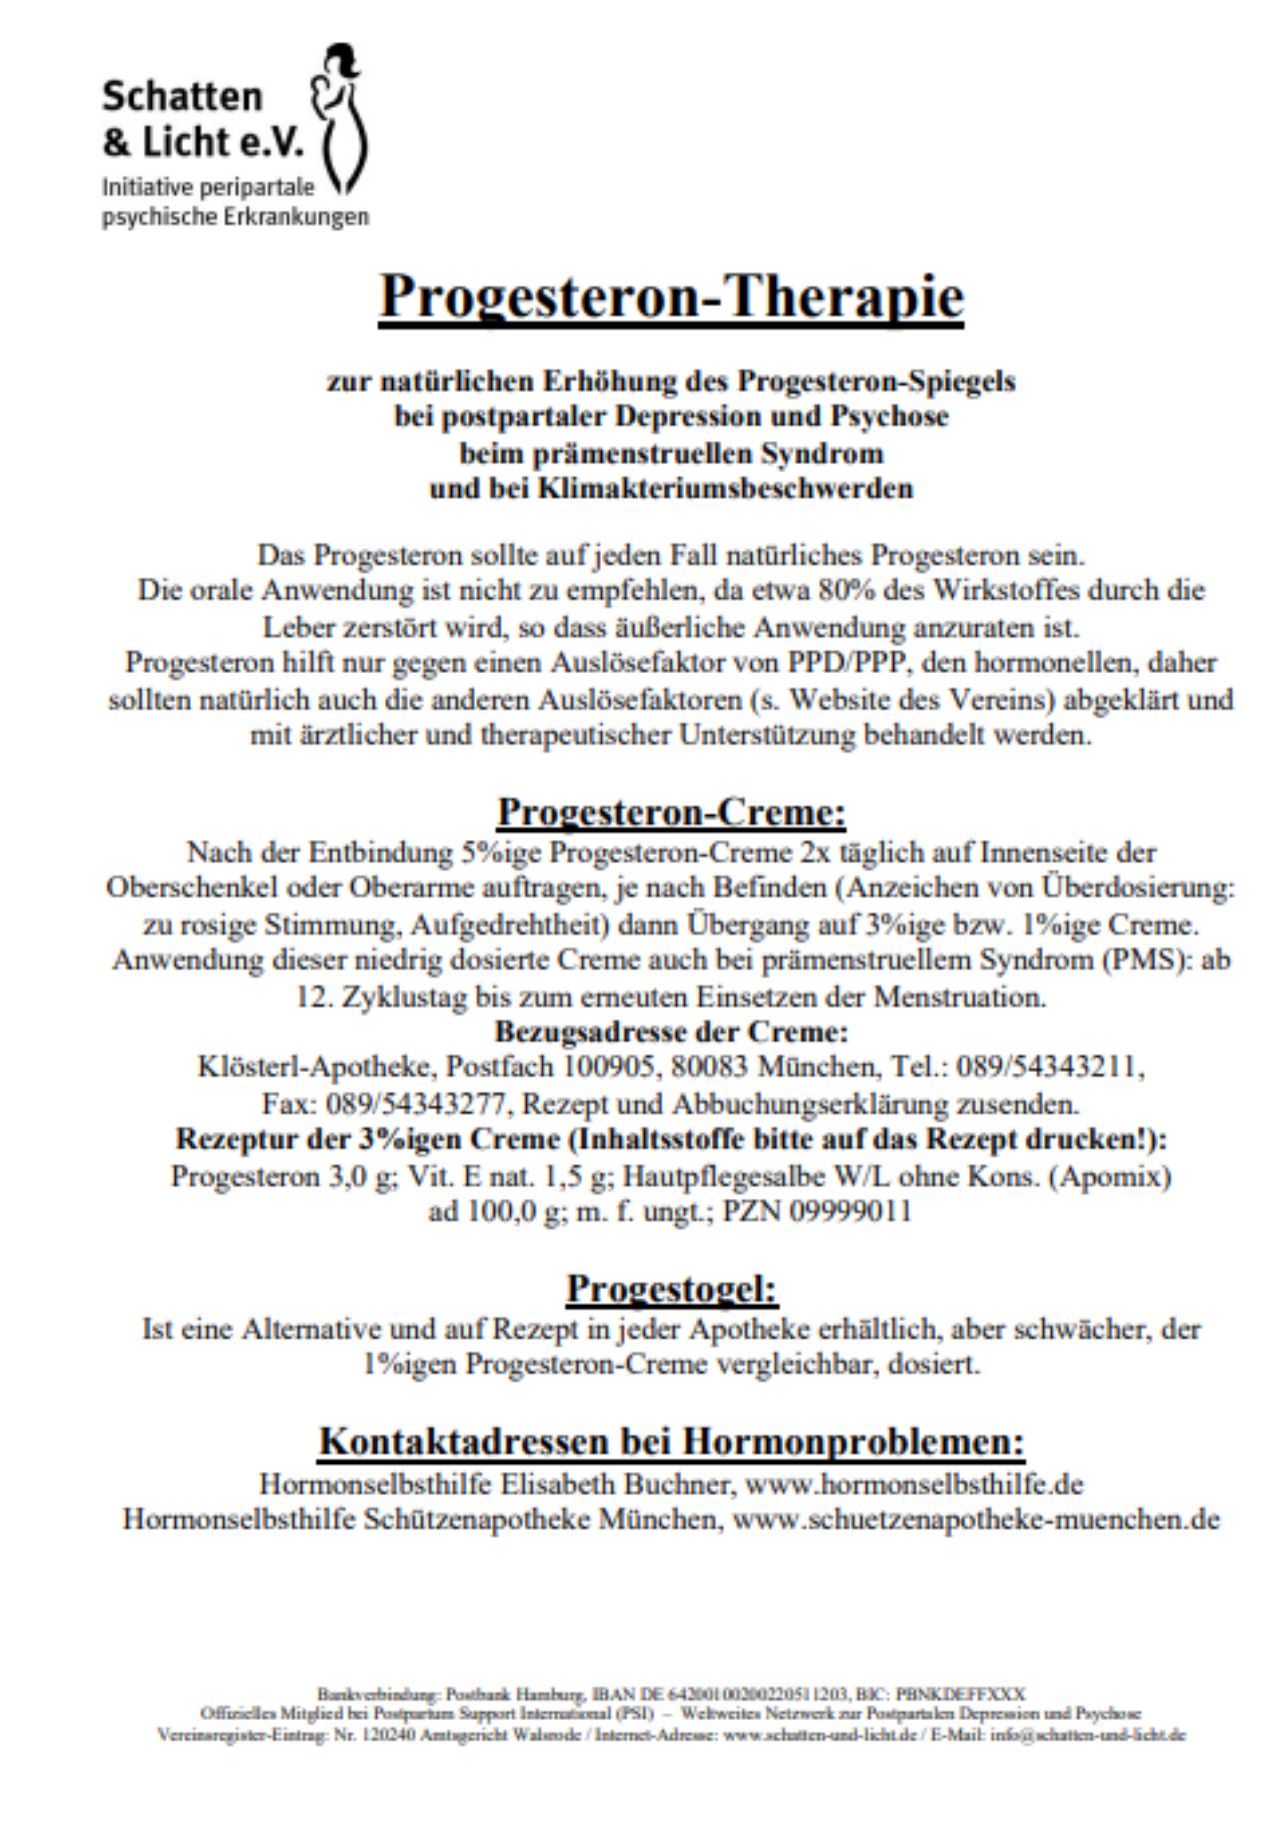 Progesterone prophylaxis